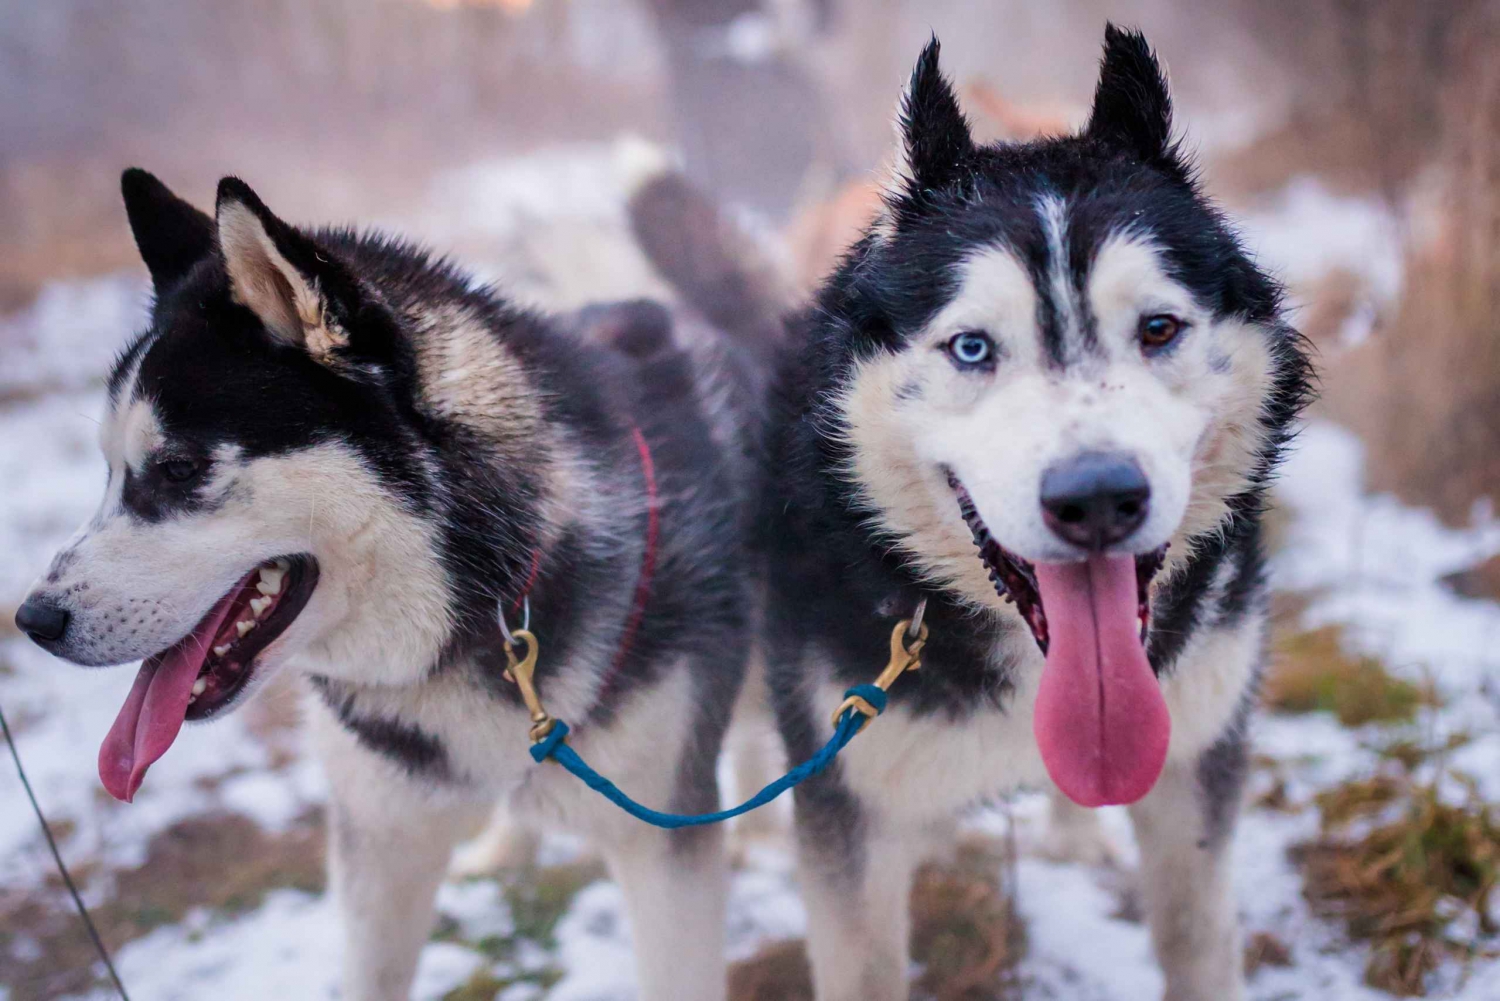 Vanuit Krakau: Hondensledetocht in het Tatragebergte